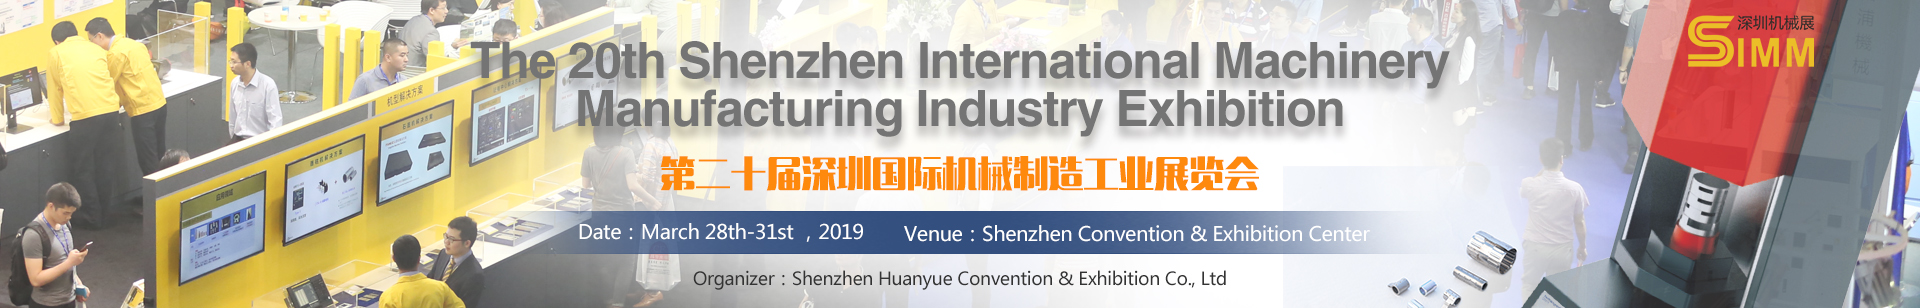 Shenzhen International Machinery Manufacturing Industry Exhibition